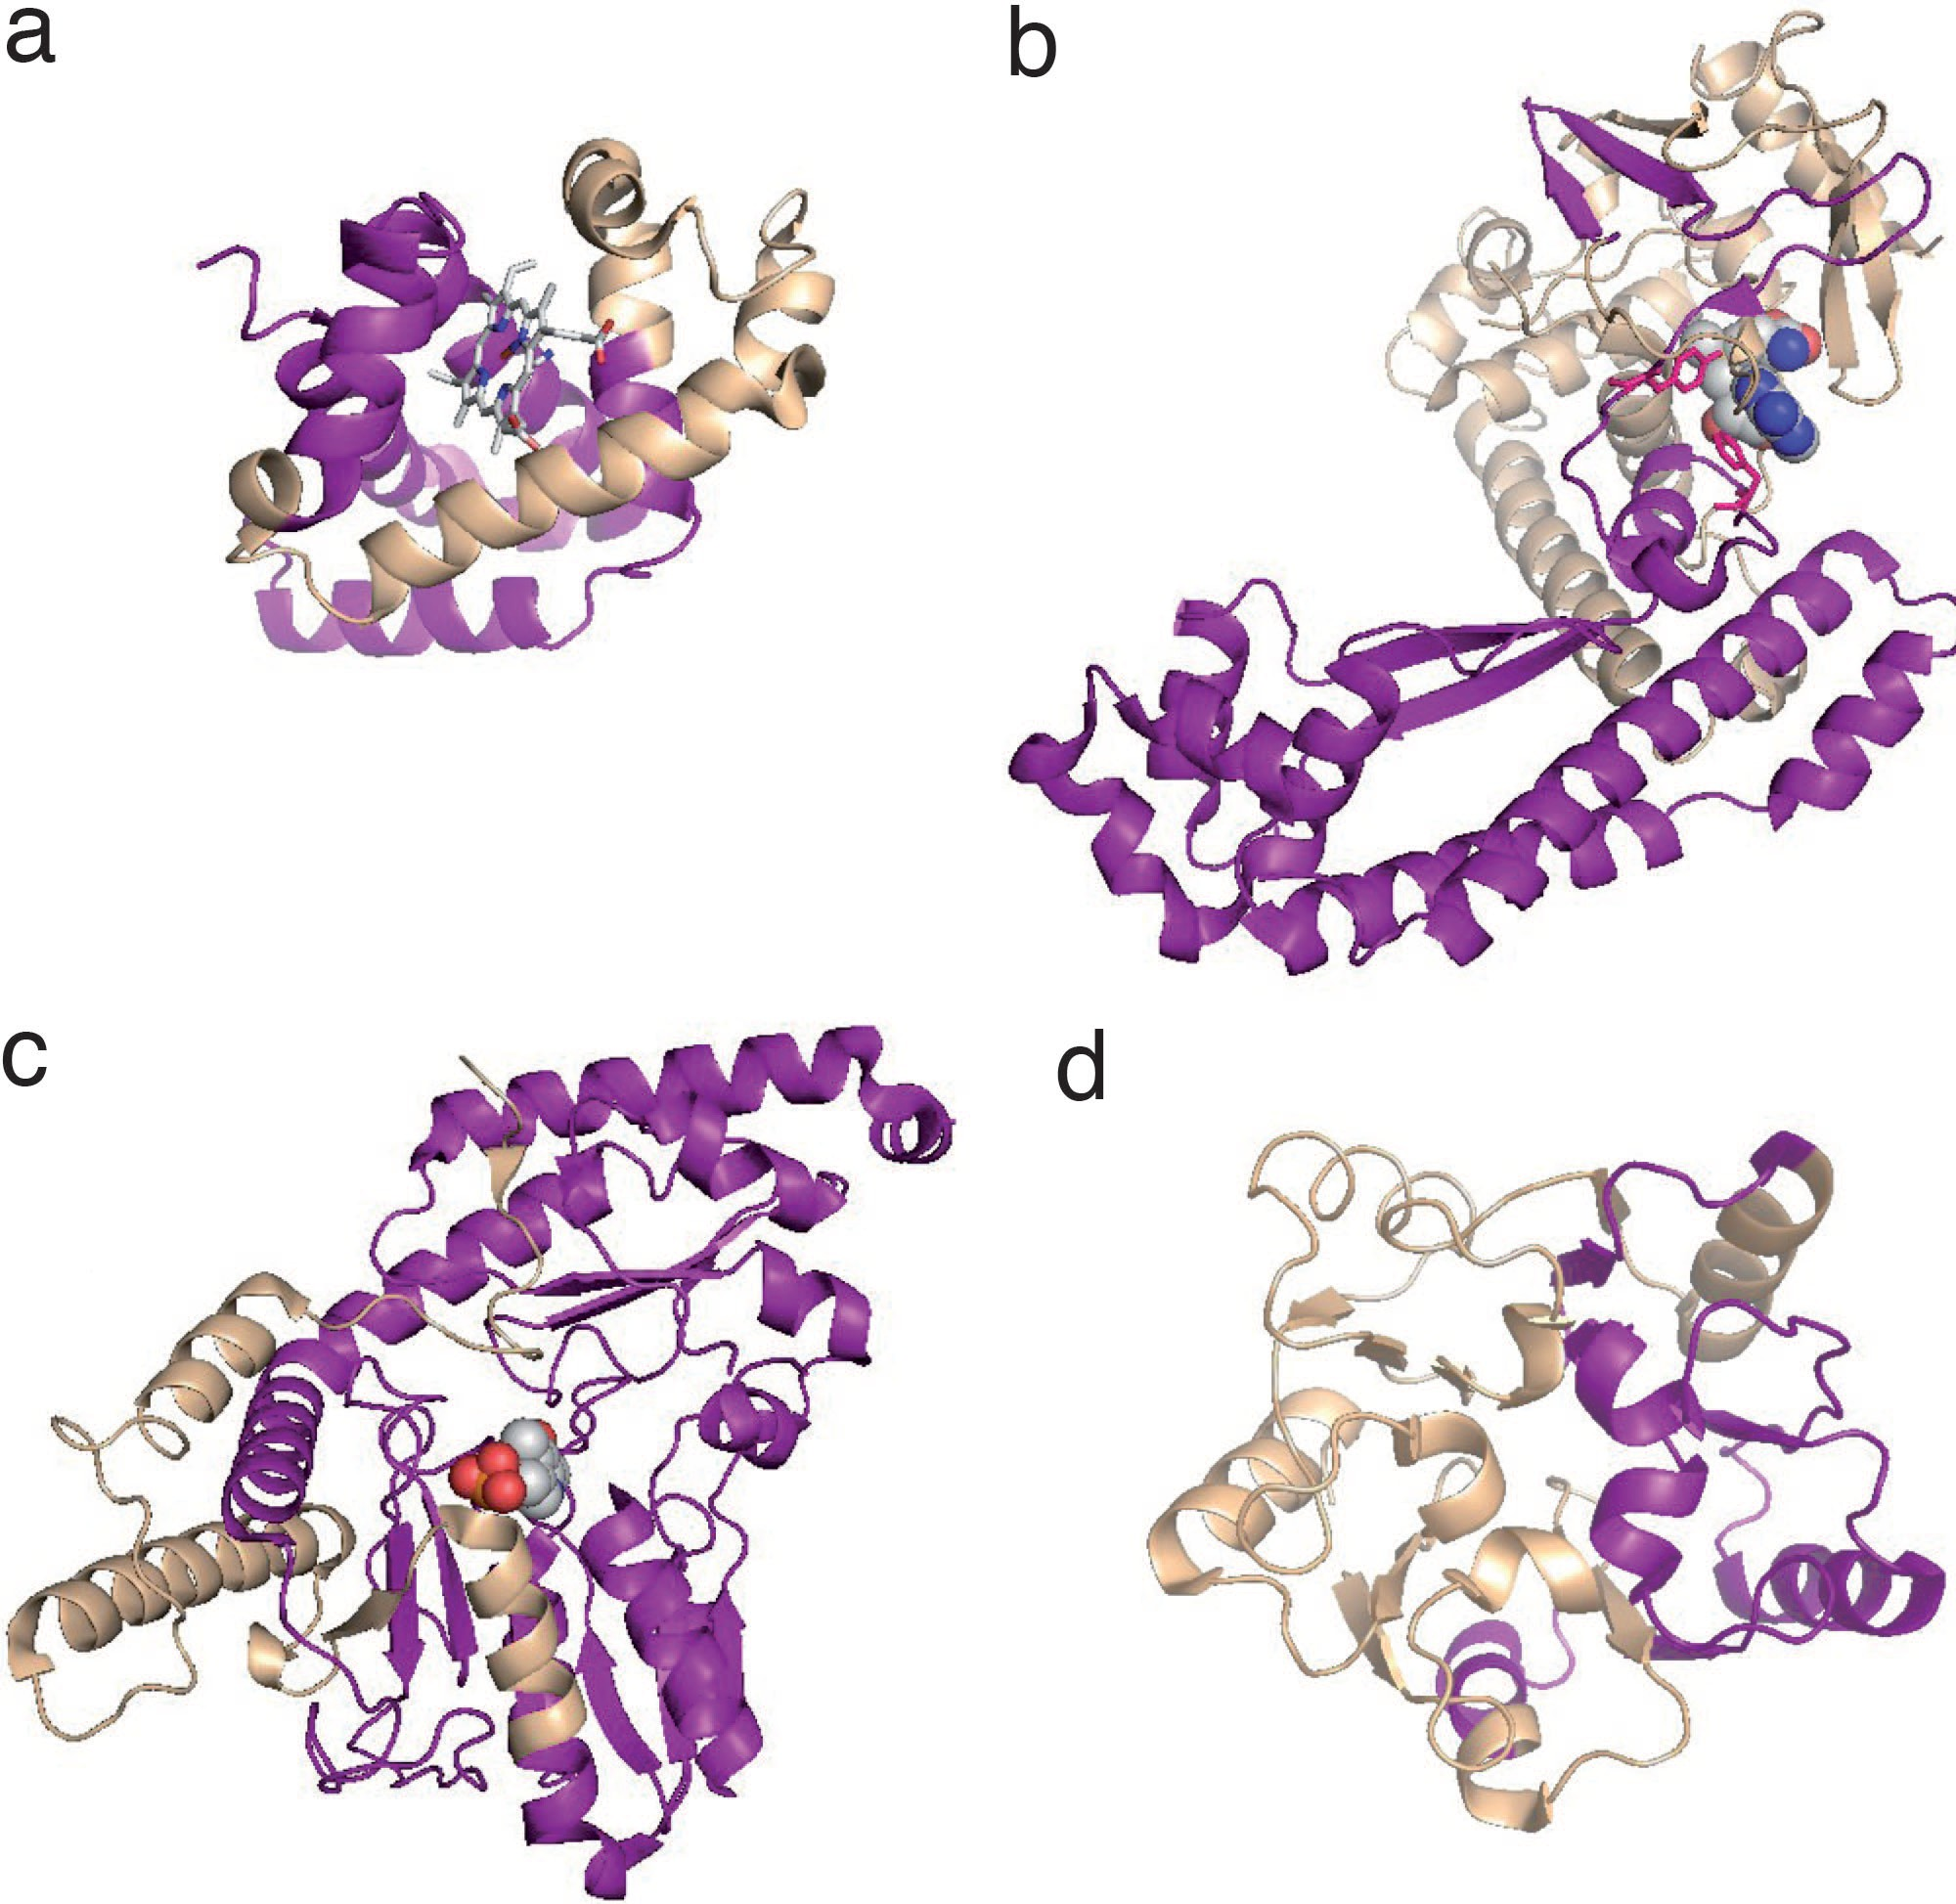 Plausibilità strutturale di varianti di splicing Modelli per omologia di proteine soggette a splicing alternativo; La parte viola indica regioni rimosse da eventi